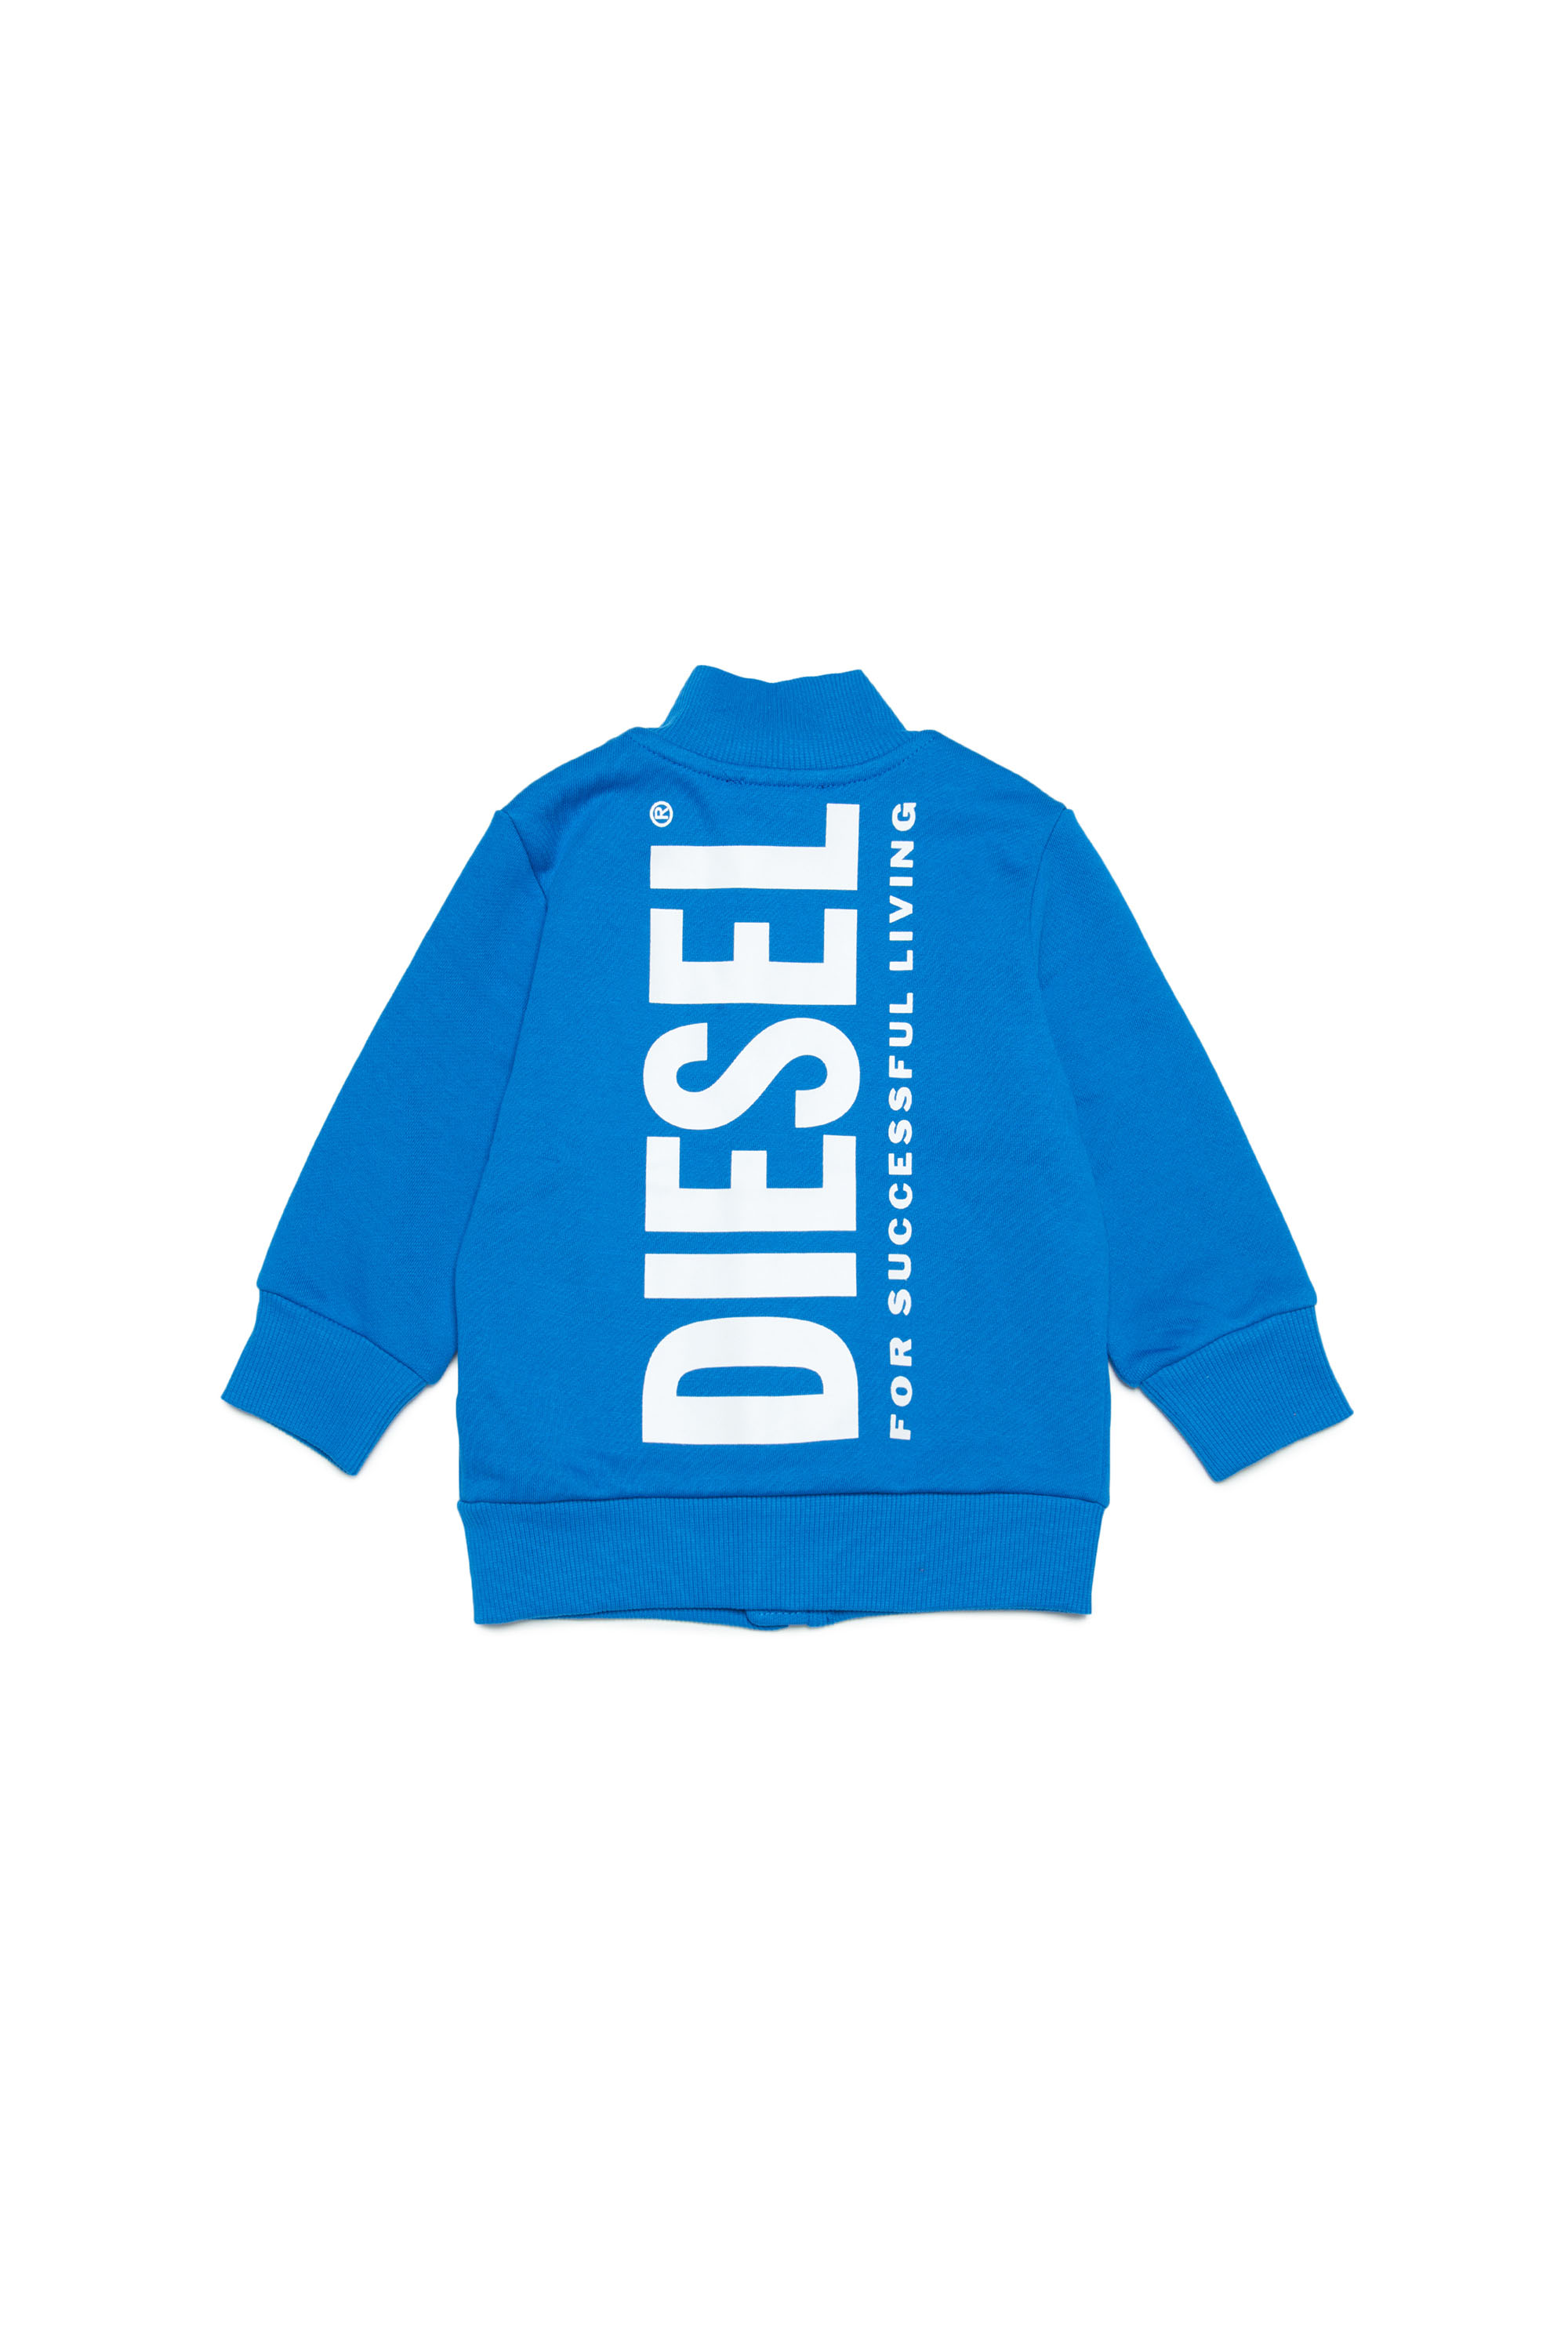 Diesel - SOLIB, Blau - Image 2